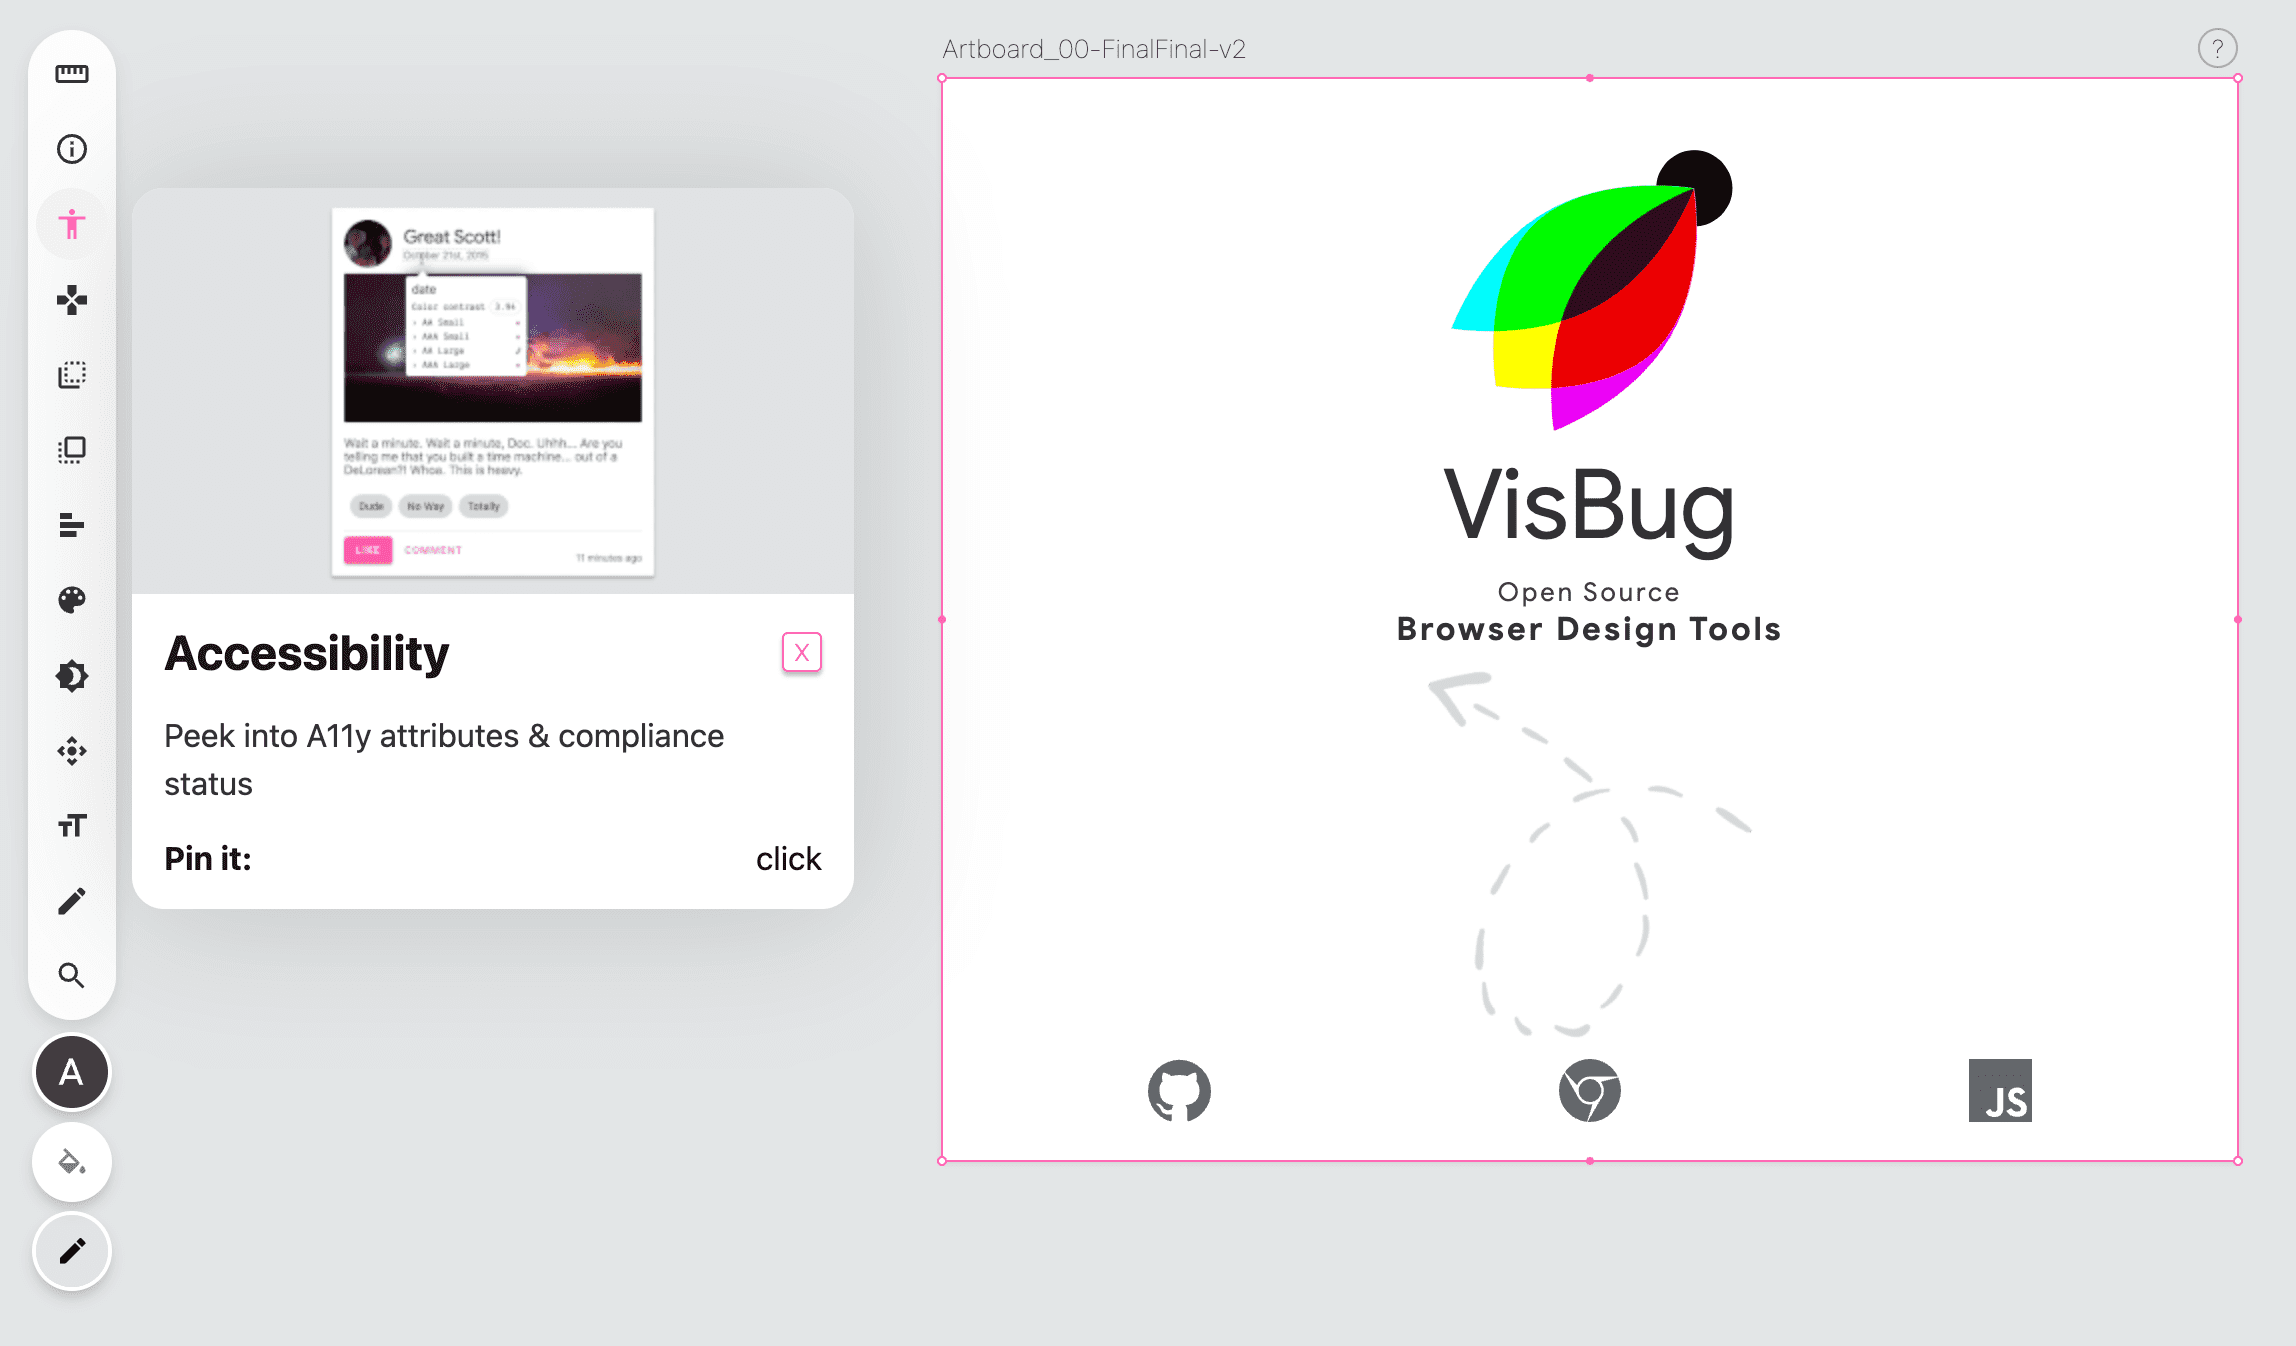 צילום מסך של סרגל הכלים של VisBug בצד ימין של דף ריק, סמל כלי הנגישות בצבע ורוד ומוצג חלון קופץ שמספק הוראות לשימוש בכלי.